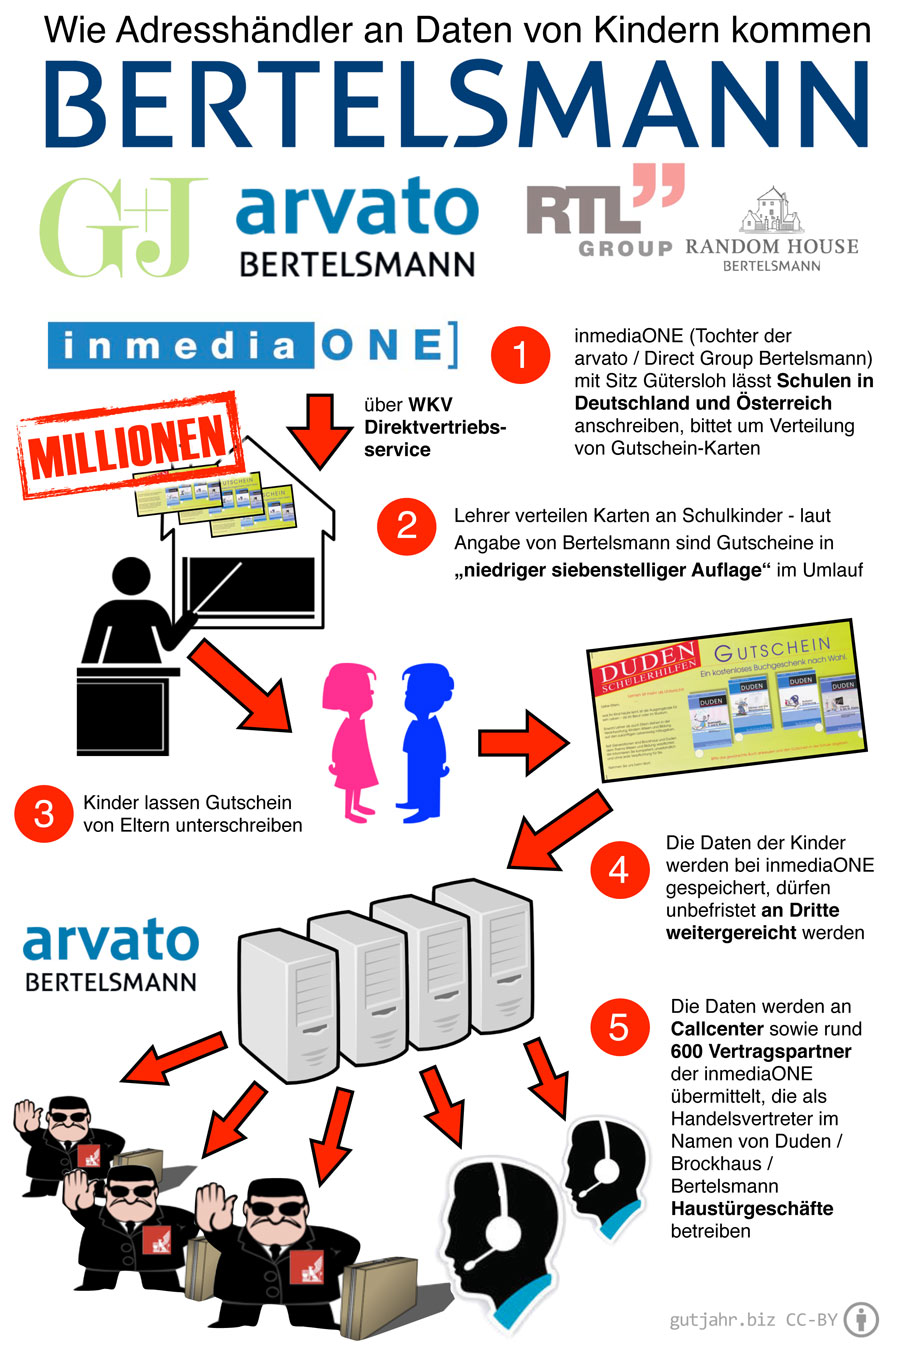 Bertelsmann-Kinder-Datenschutz